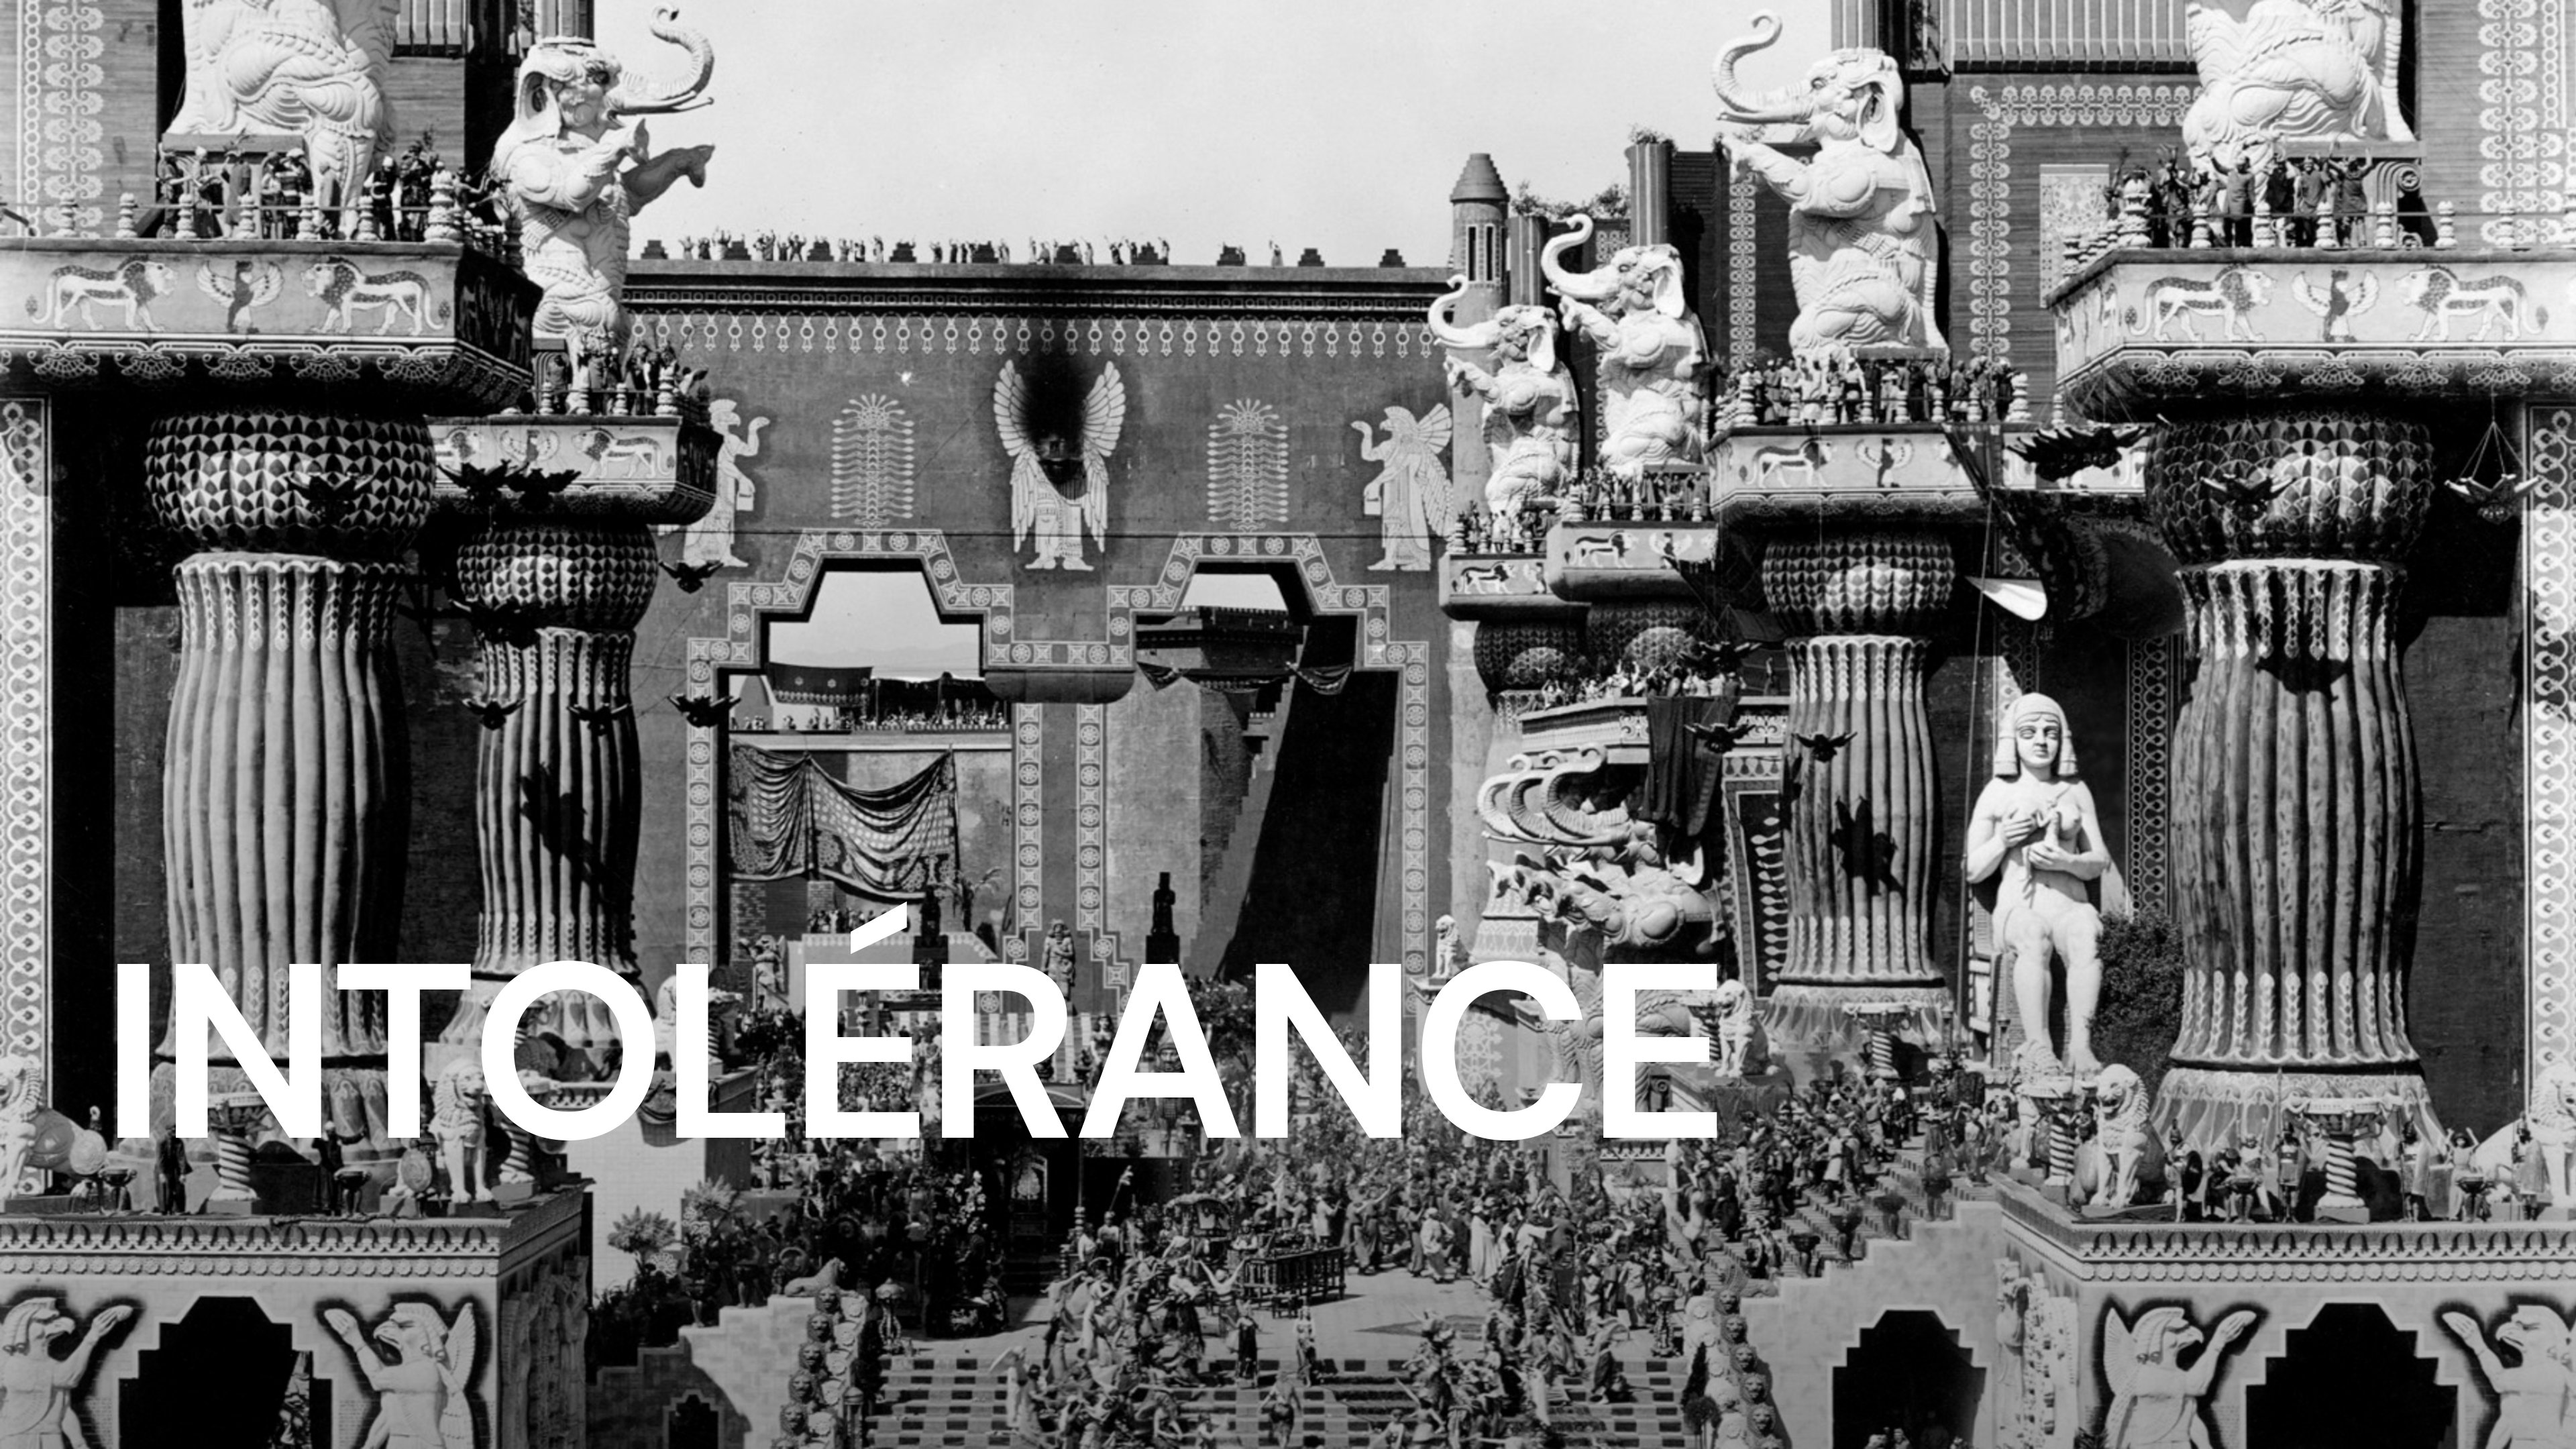 Intolerance - D.W. GRIFFITH